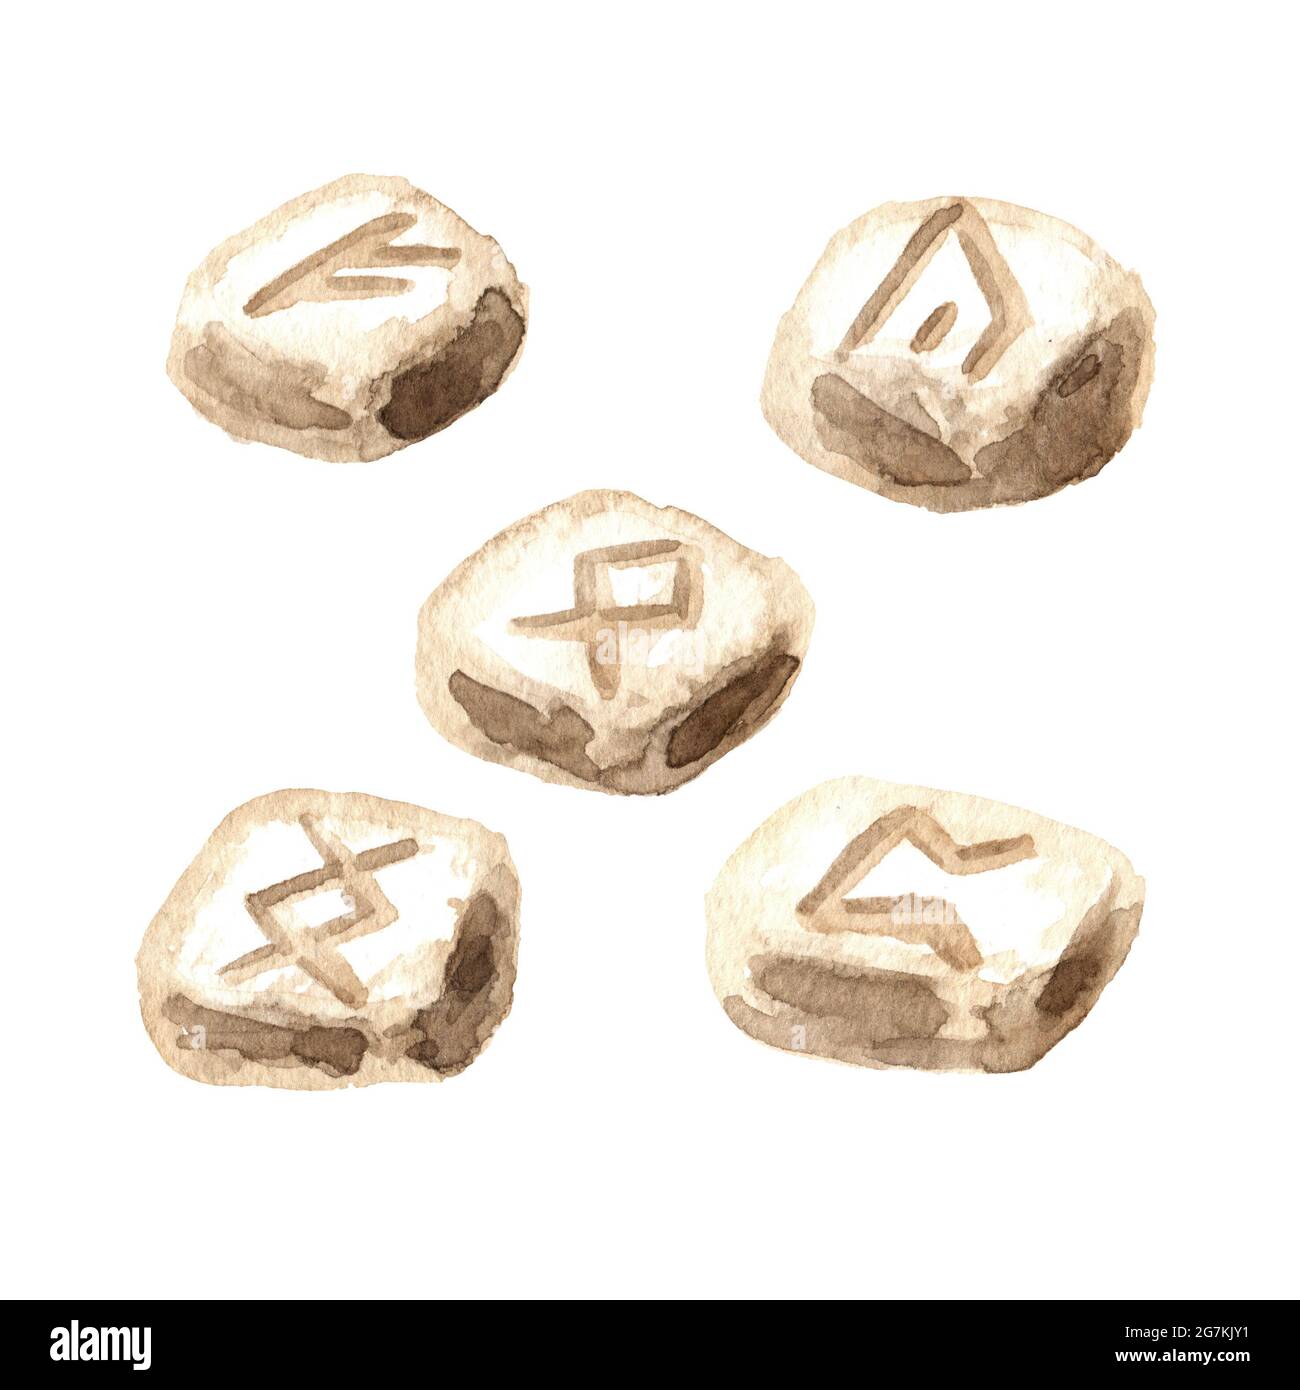 Handgefertigte Runen aus skandinavischem Stein für Wahrsagerei. Hexerei, Magie, Okkult und esoterisches Konzept. Handgezeichnete Aquarell-Illustration isolieren Stockfoto